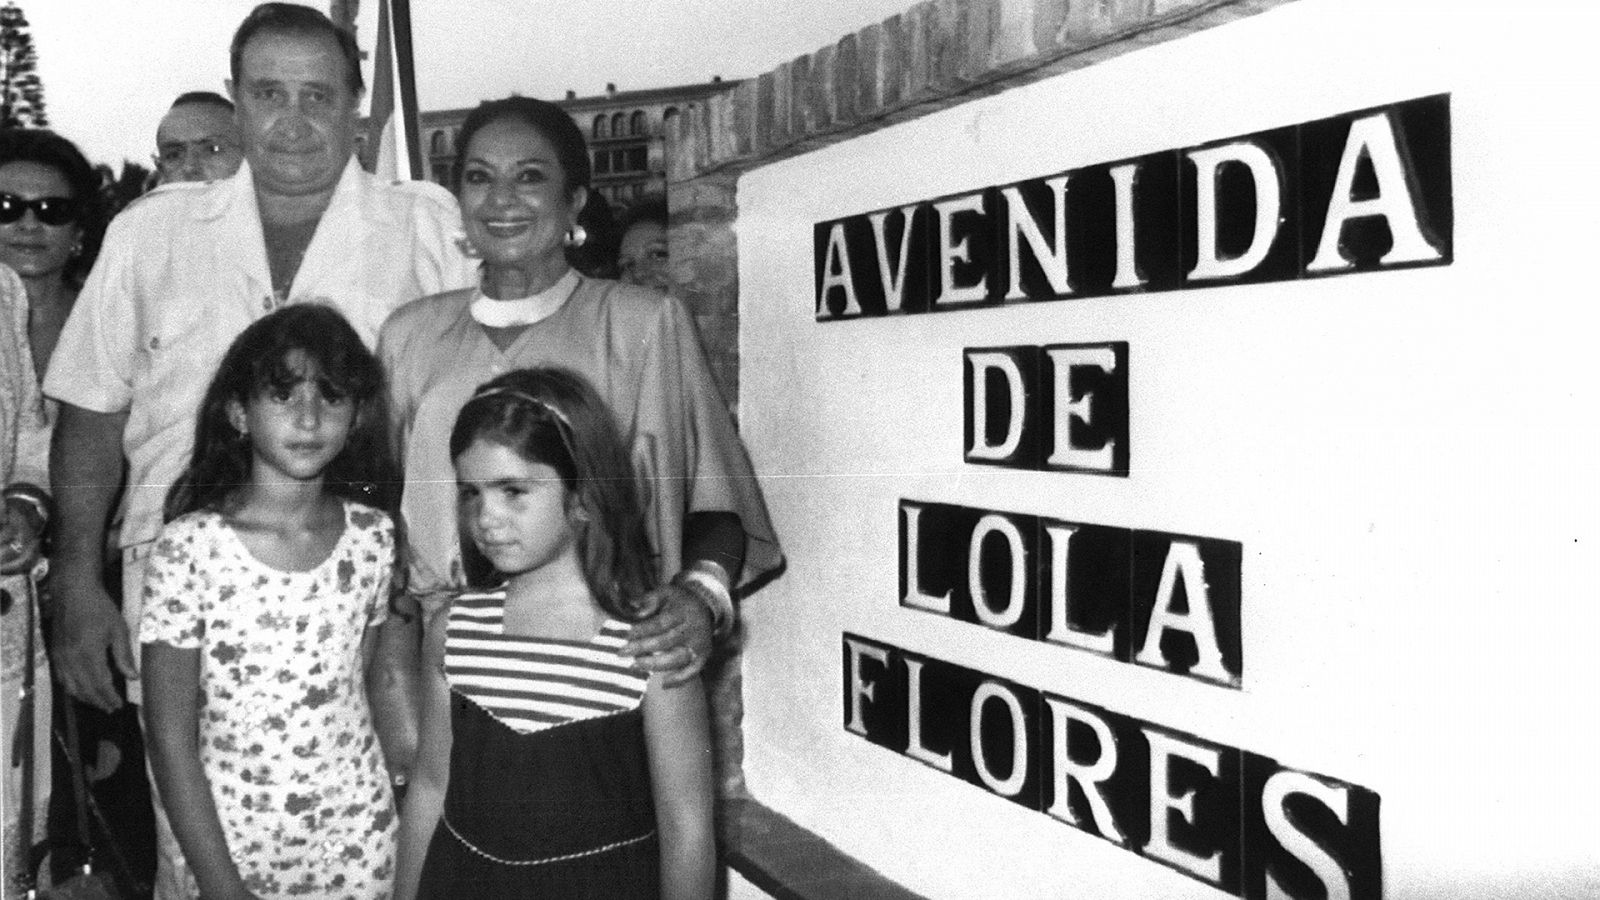 Lazos de sangre - T6 - Especial Lola Flores "100 años a tu vera" - Documental en RTVE